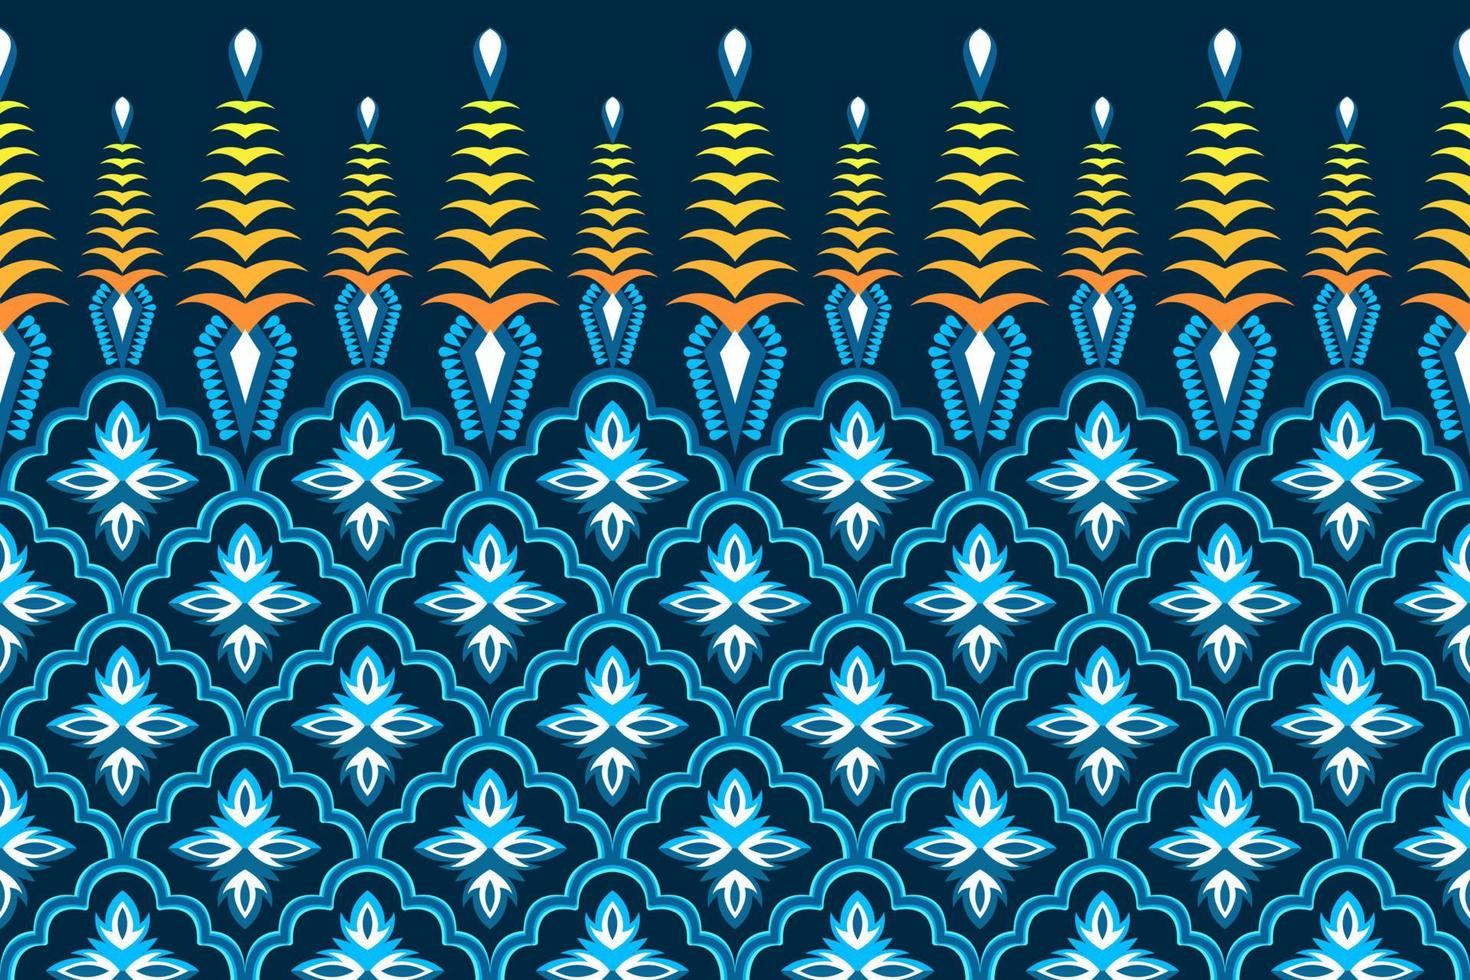 diseño de patrones étnicos marroquíes. tela azteca alfombra mandala ornamento nativo chevron textil decoración papel tapiz. Fondo de ilustraciones vectoriales de bordado tradicional indio africano de Turquía tribal vector